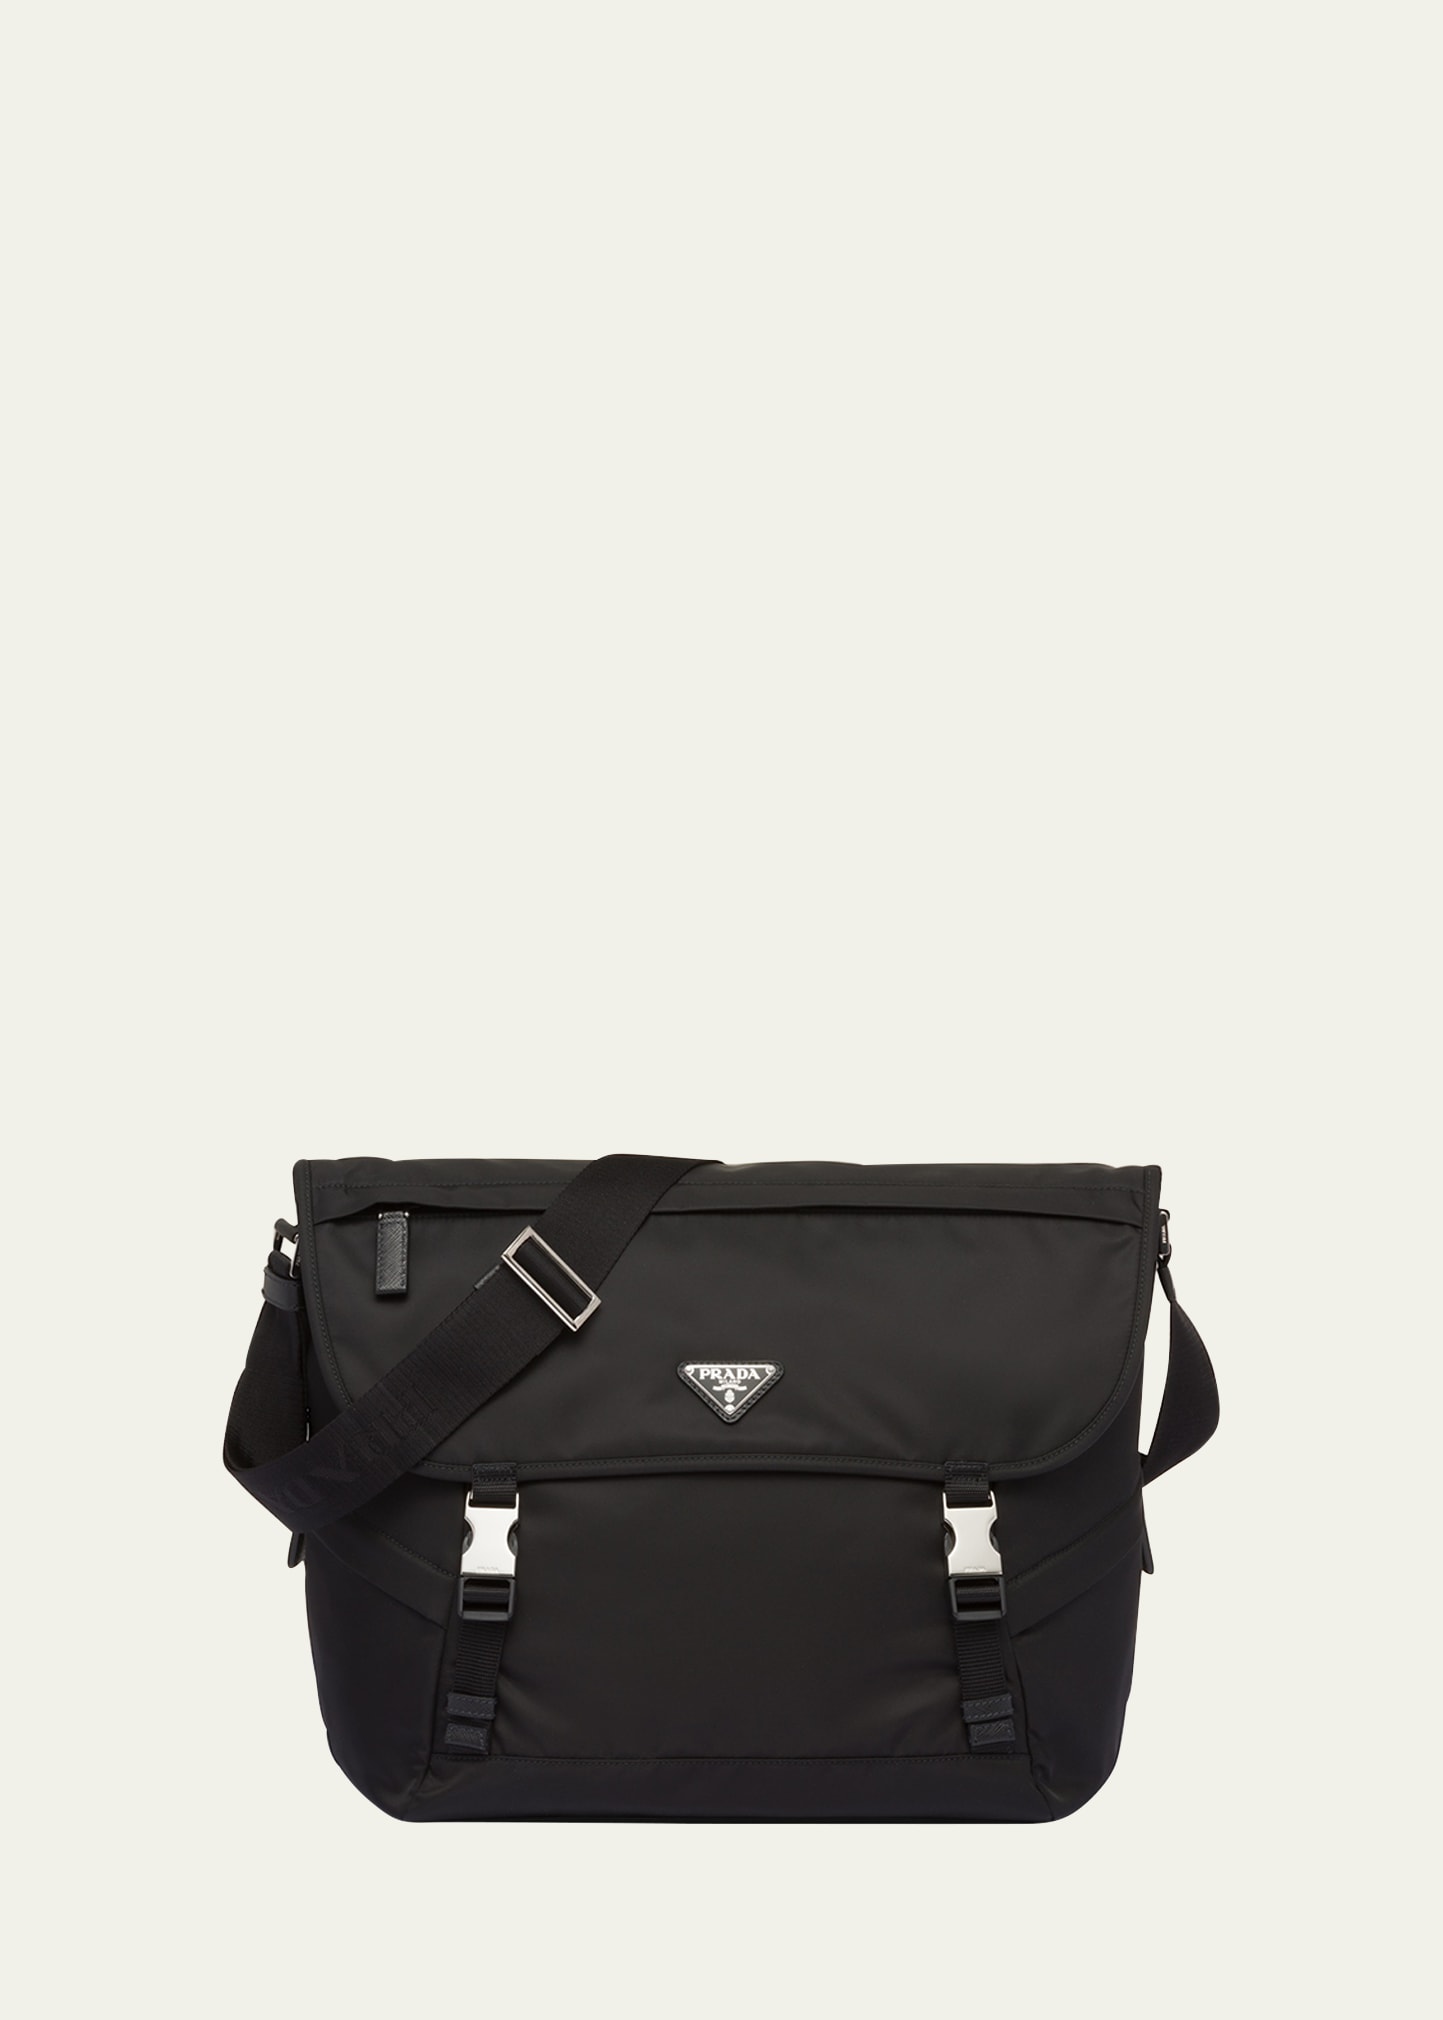 Prada Men's Nylon Messenger Crossbody Bag In Black